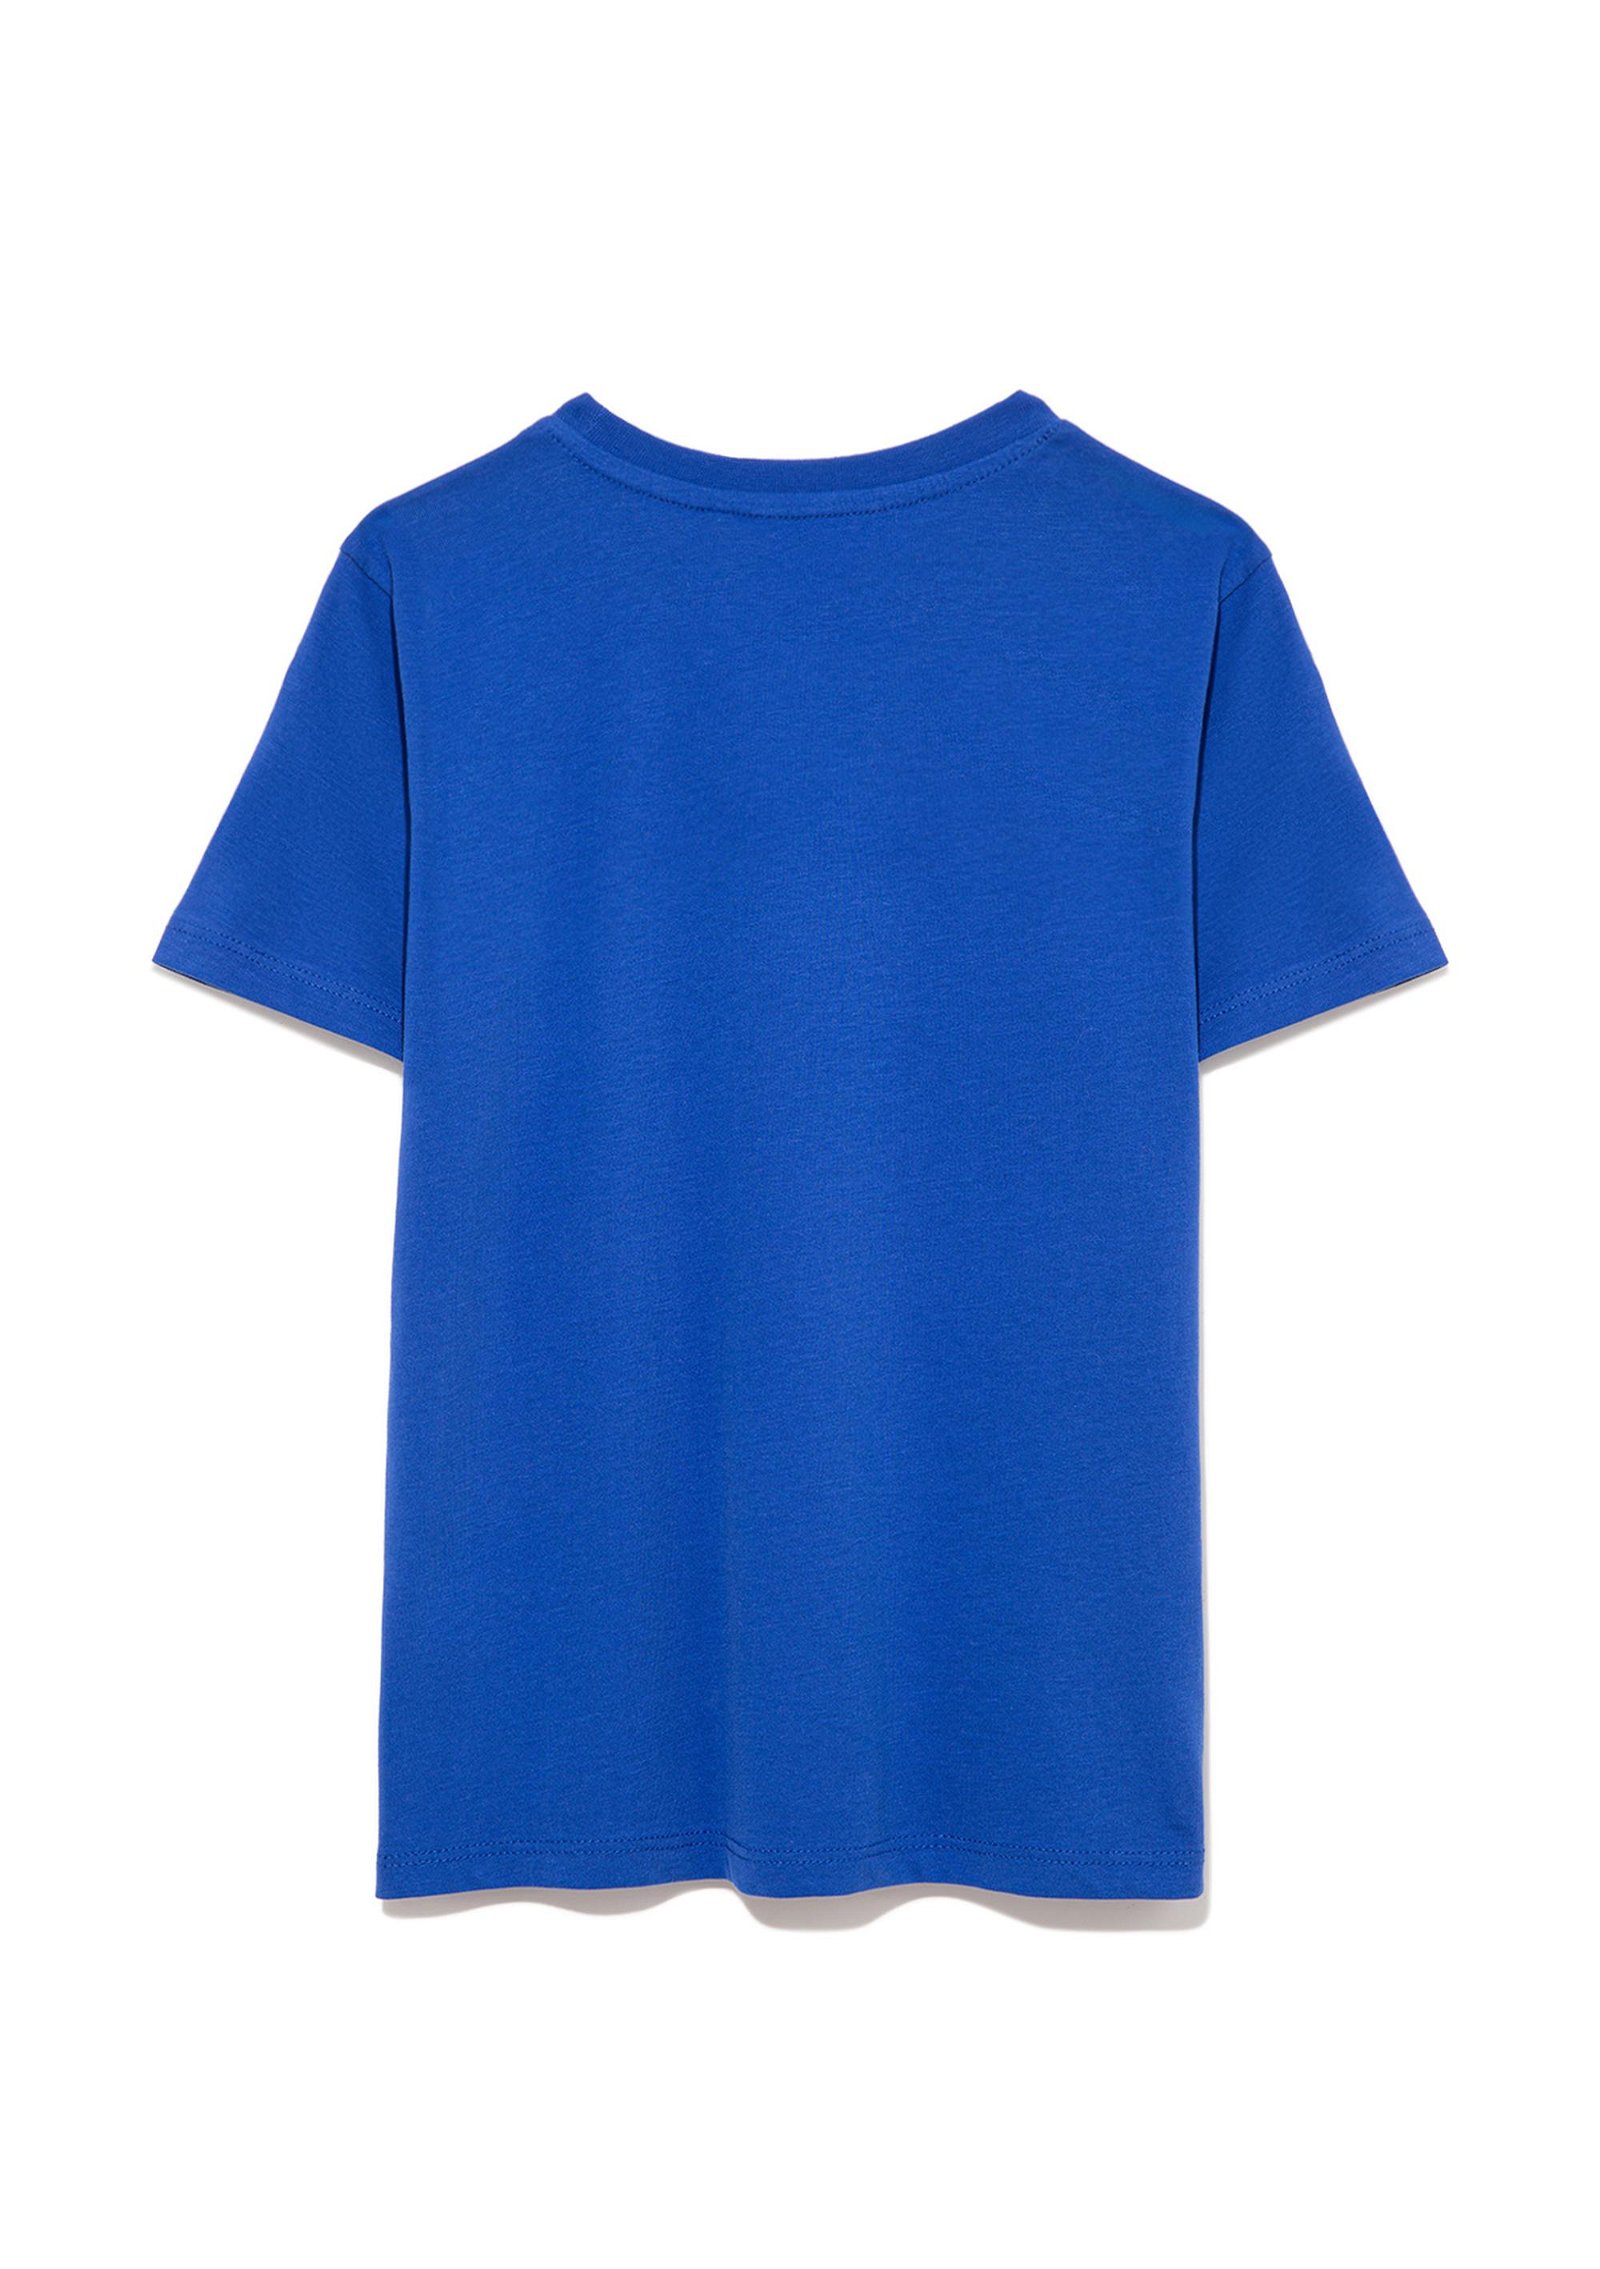 Mavi Mavi Logo Baskılı Mavi Tişört Regular Fit / Normal Kesim 6610030-70896